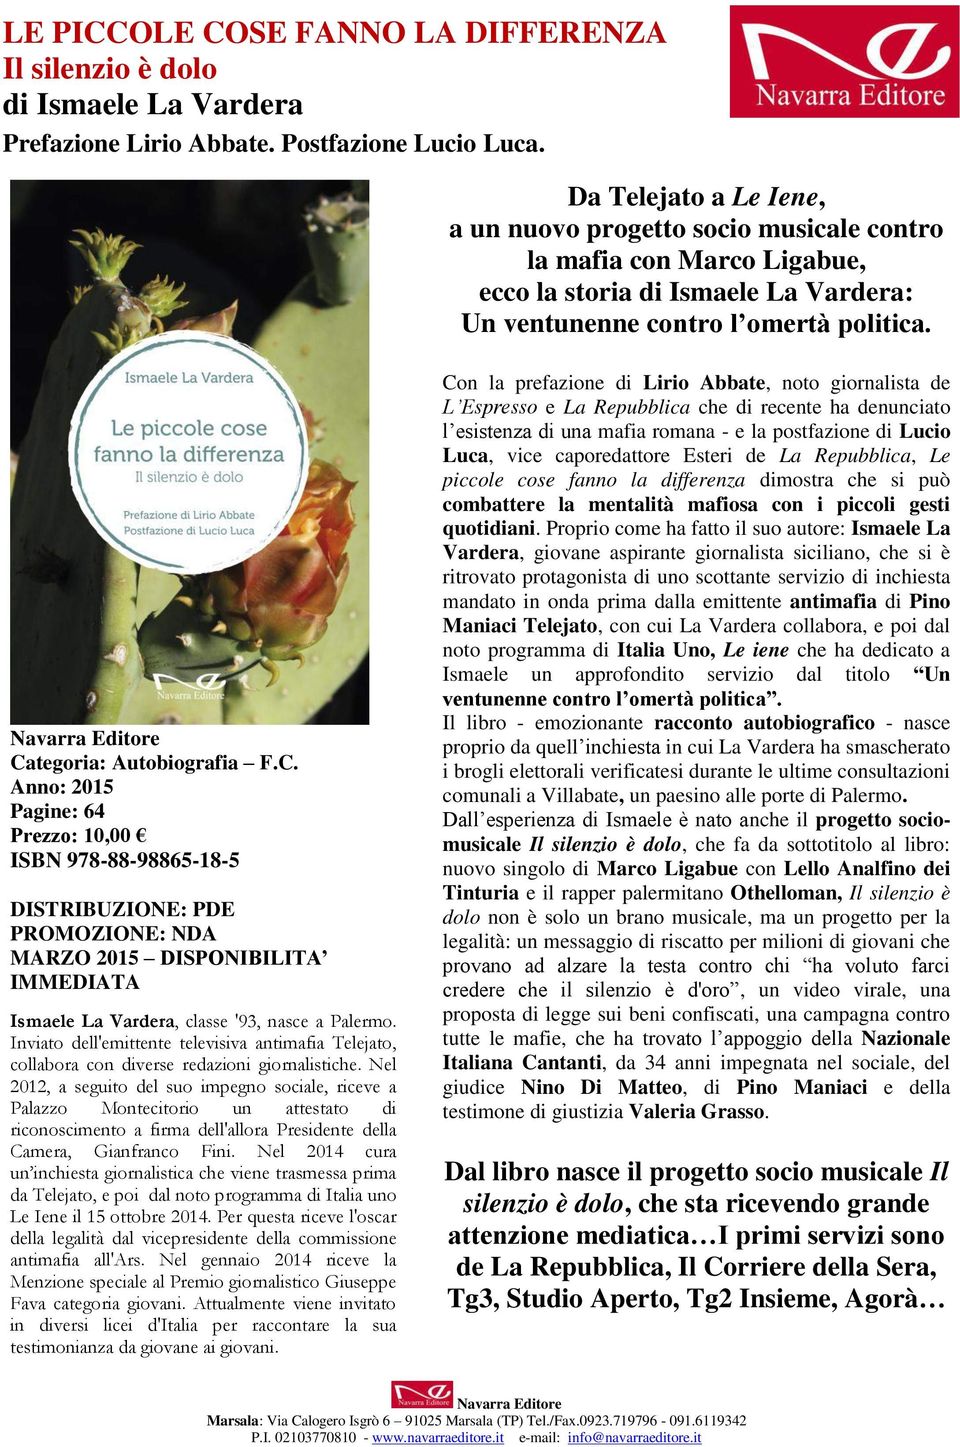 Navarra Editore Categoria: Autobiografia F.C. Anno: 2015 Pagine: 64 Prezzo: 10,00 ISBN 978-88-98865-18-5 DISTRIBUZIONE: PDE PROMOZIONE: NDA MARZO 2015 DISPONIBILITA IMMEDIATA Ismaele La Vardera, classe '93, nasce a Palermo.